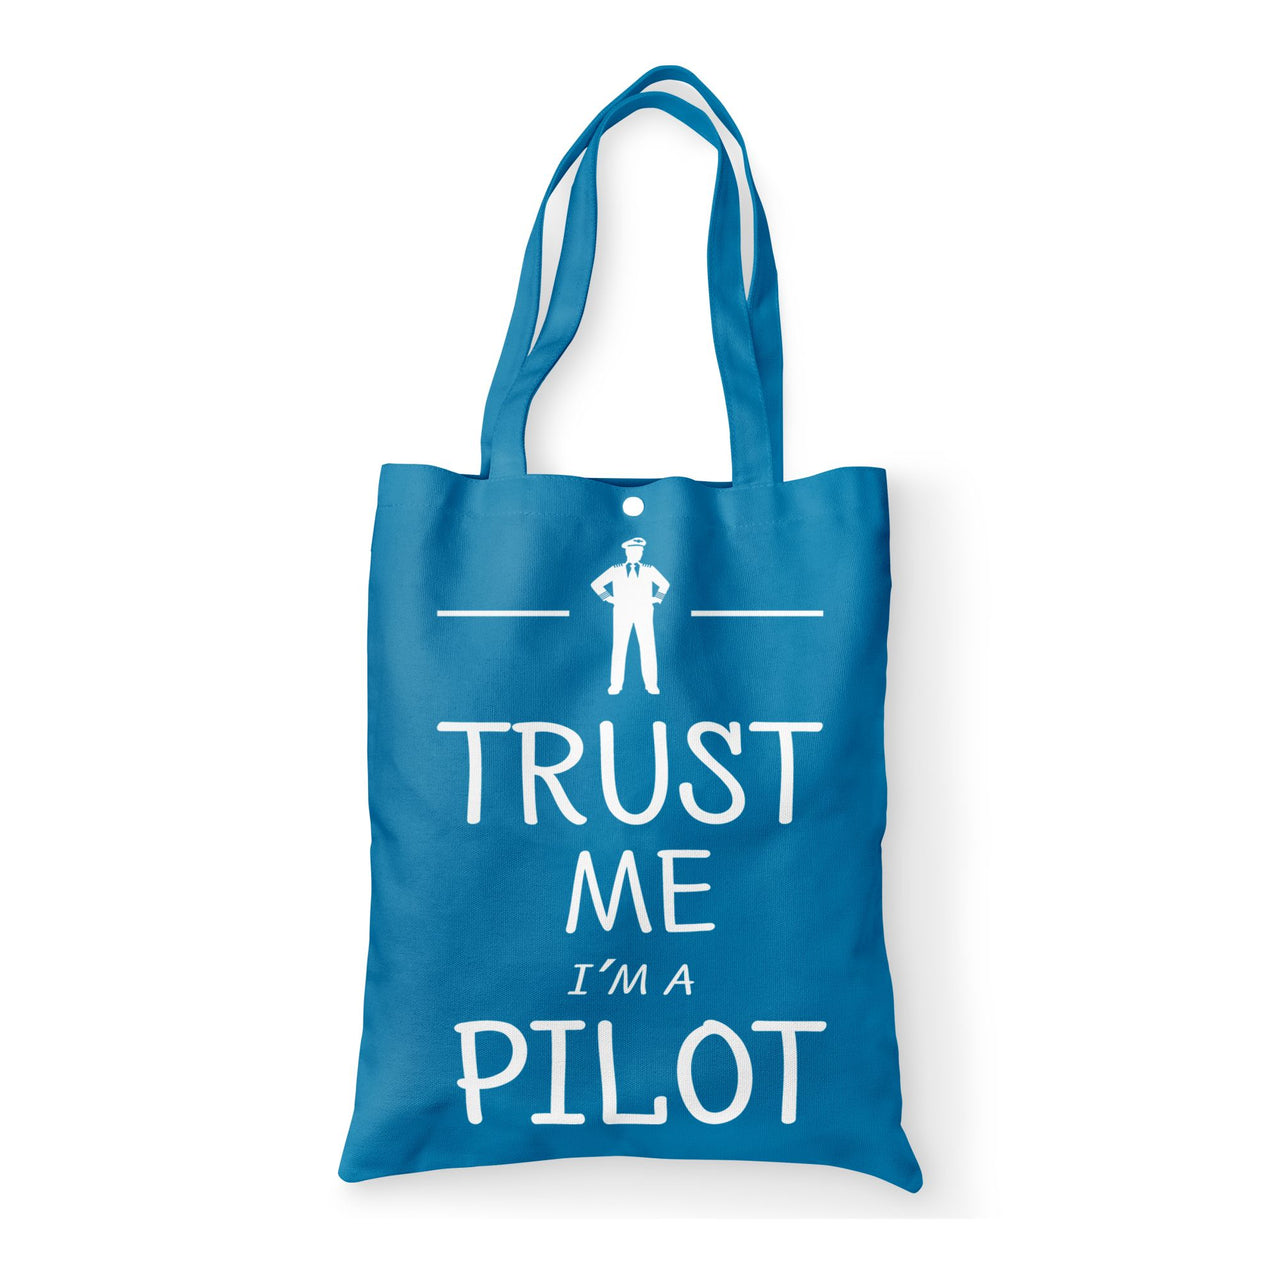 Trust Me I'm a Pilot Designed Tote Bags